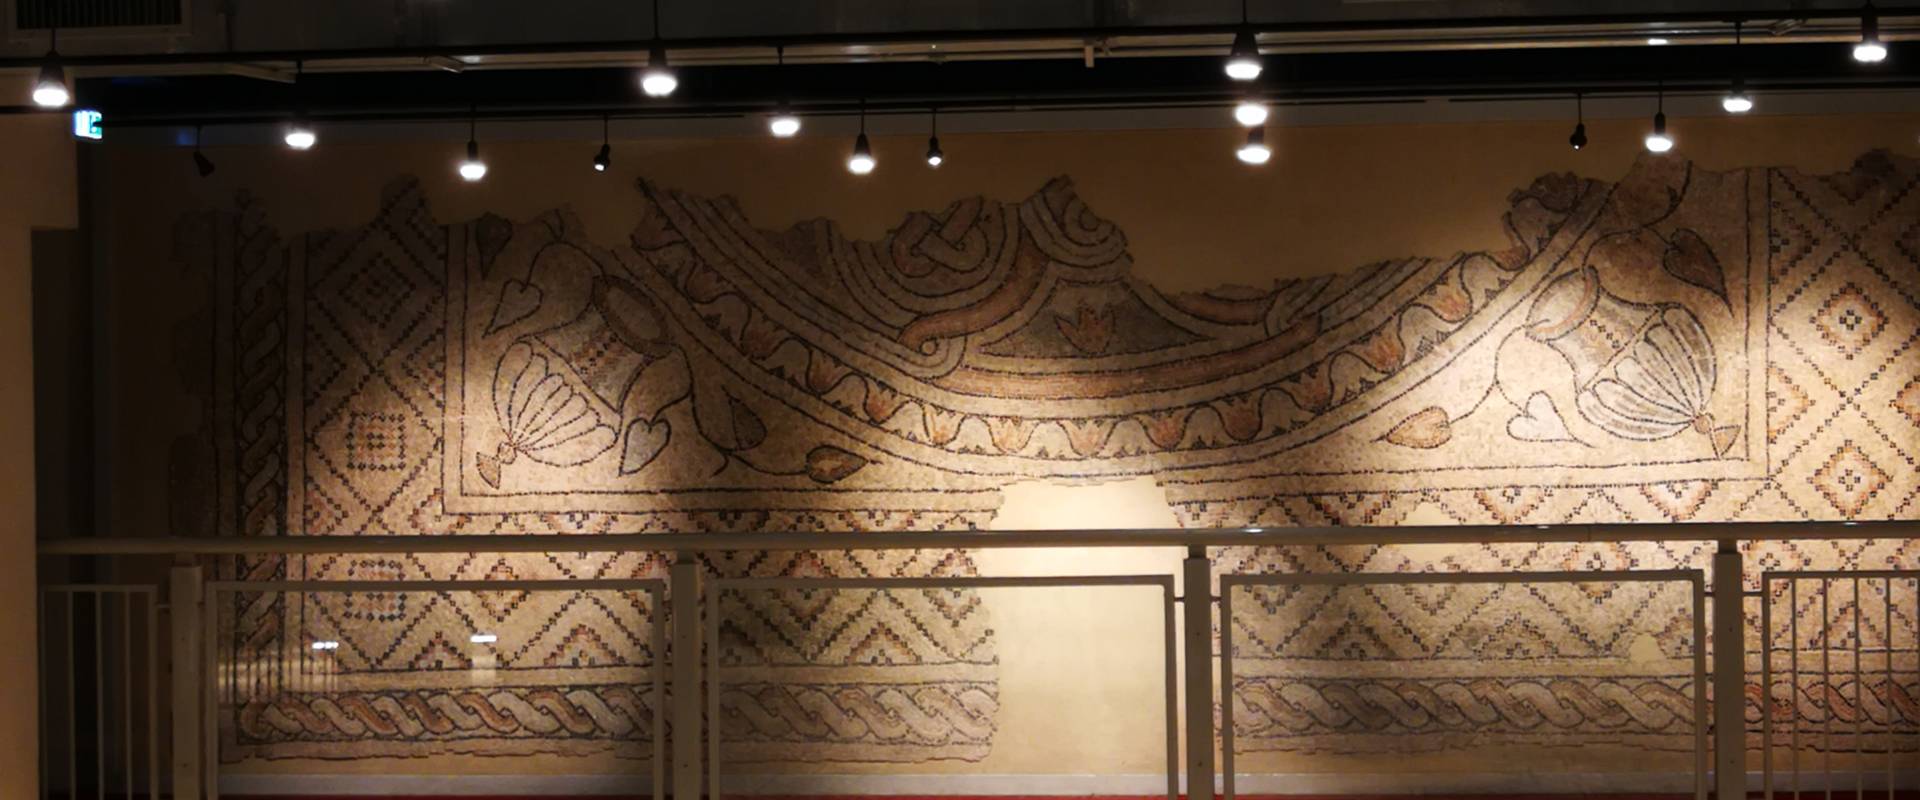 Domus dei tappeti di pietra - tappeto a parete foto di LadyBathory1974